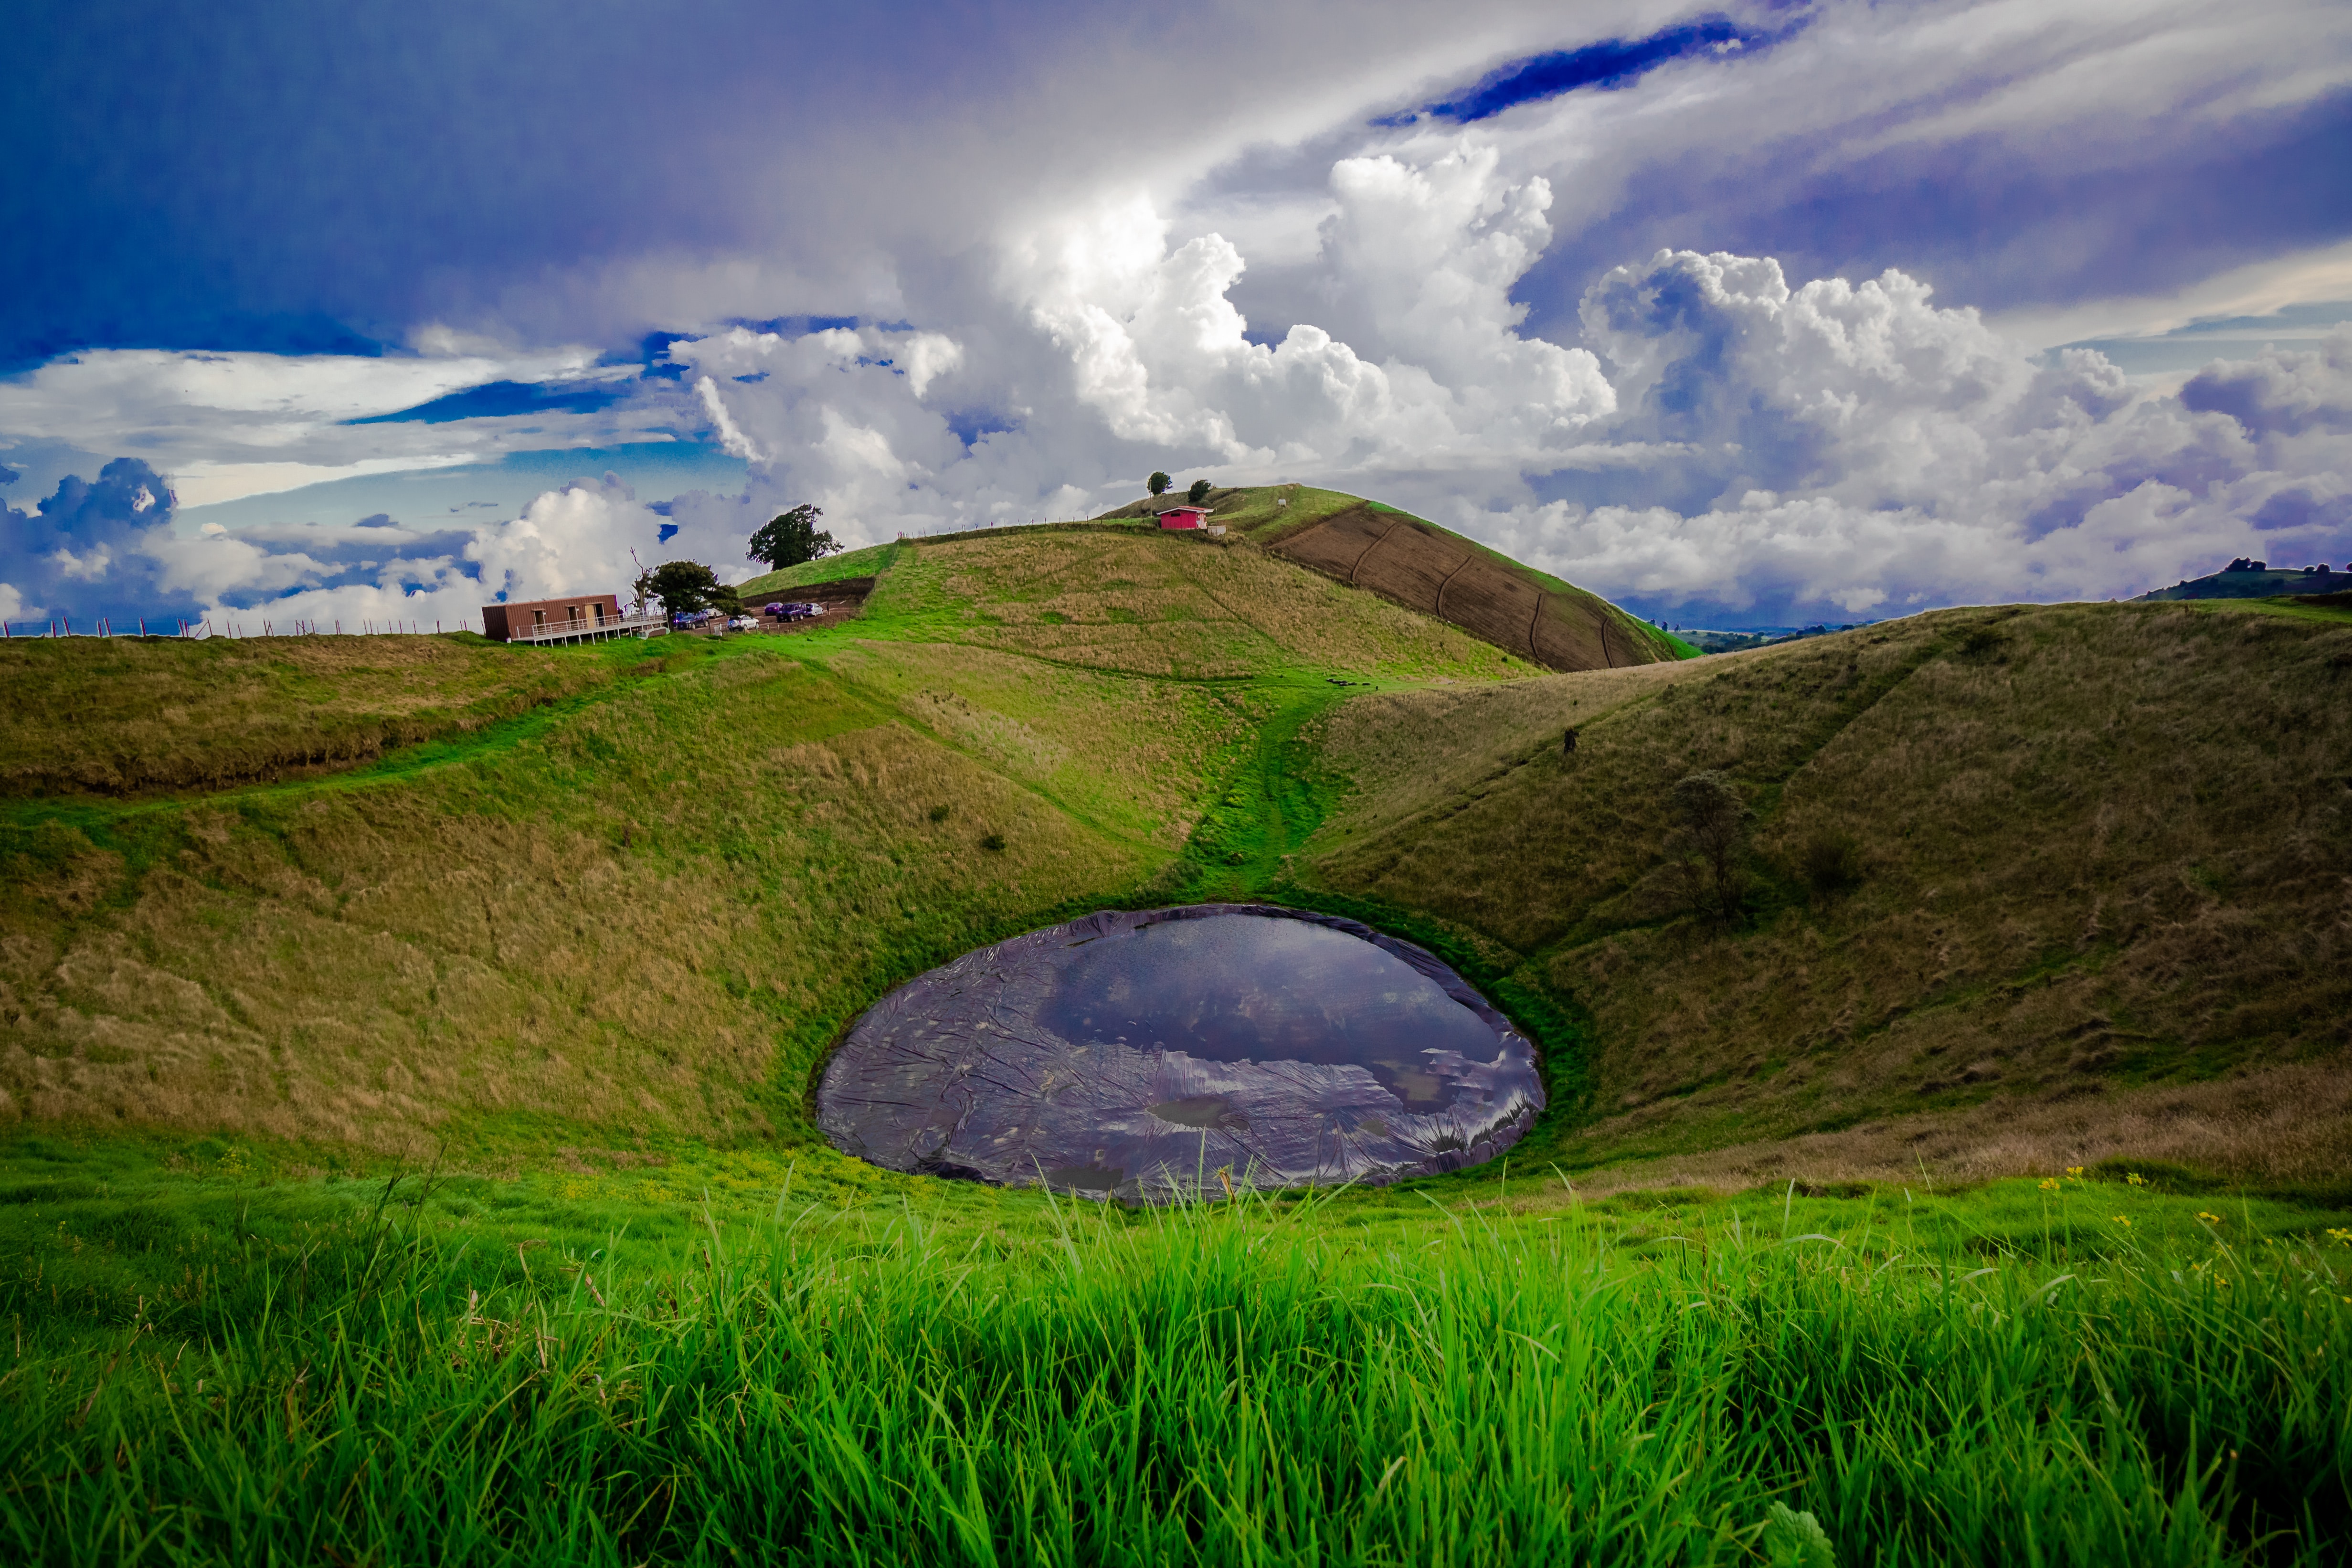 La Olla Crater, located in Cartago Province, Costa Rica.